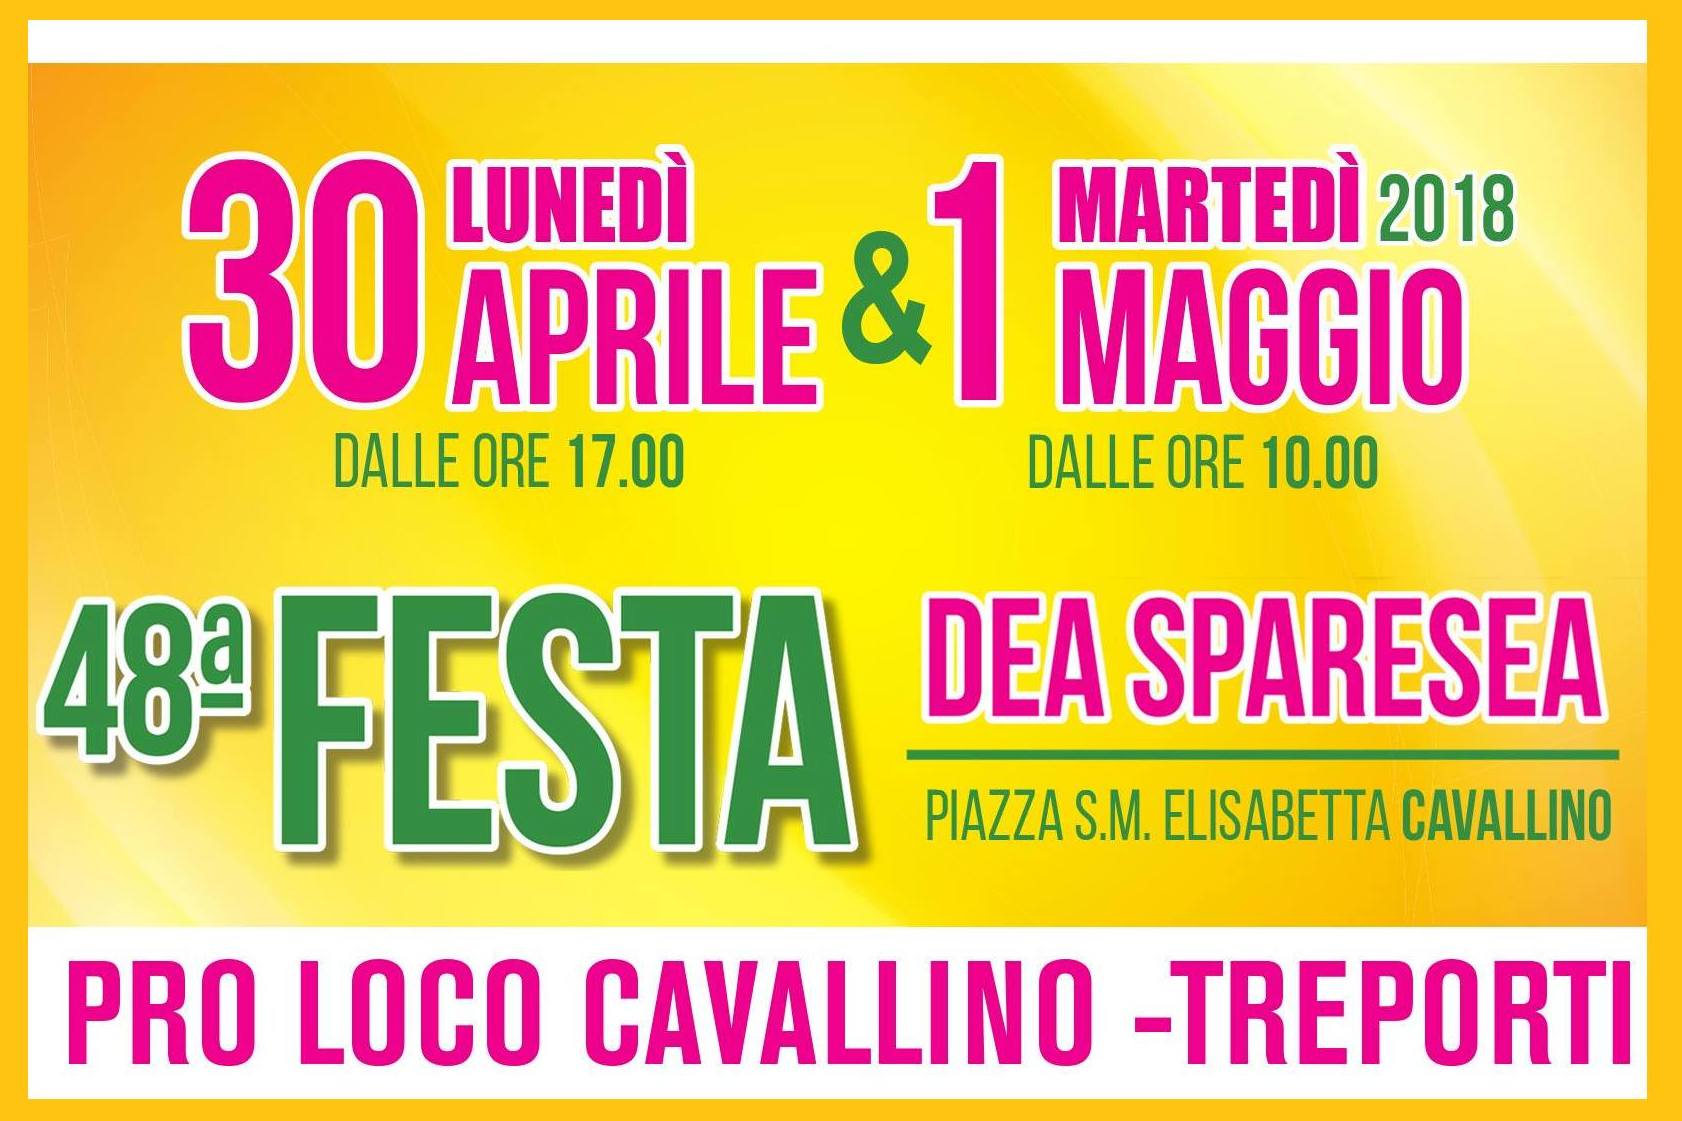 Festival Sparesea 2018 Cavallino Treporti - Brunella in Venice